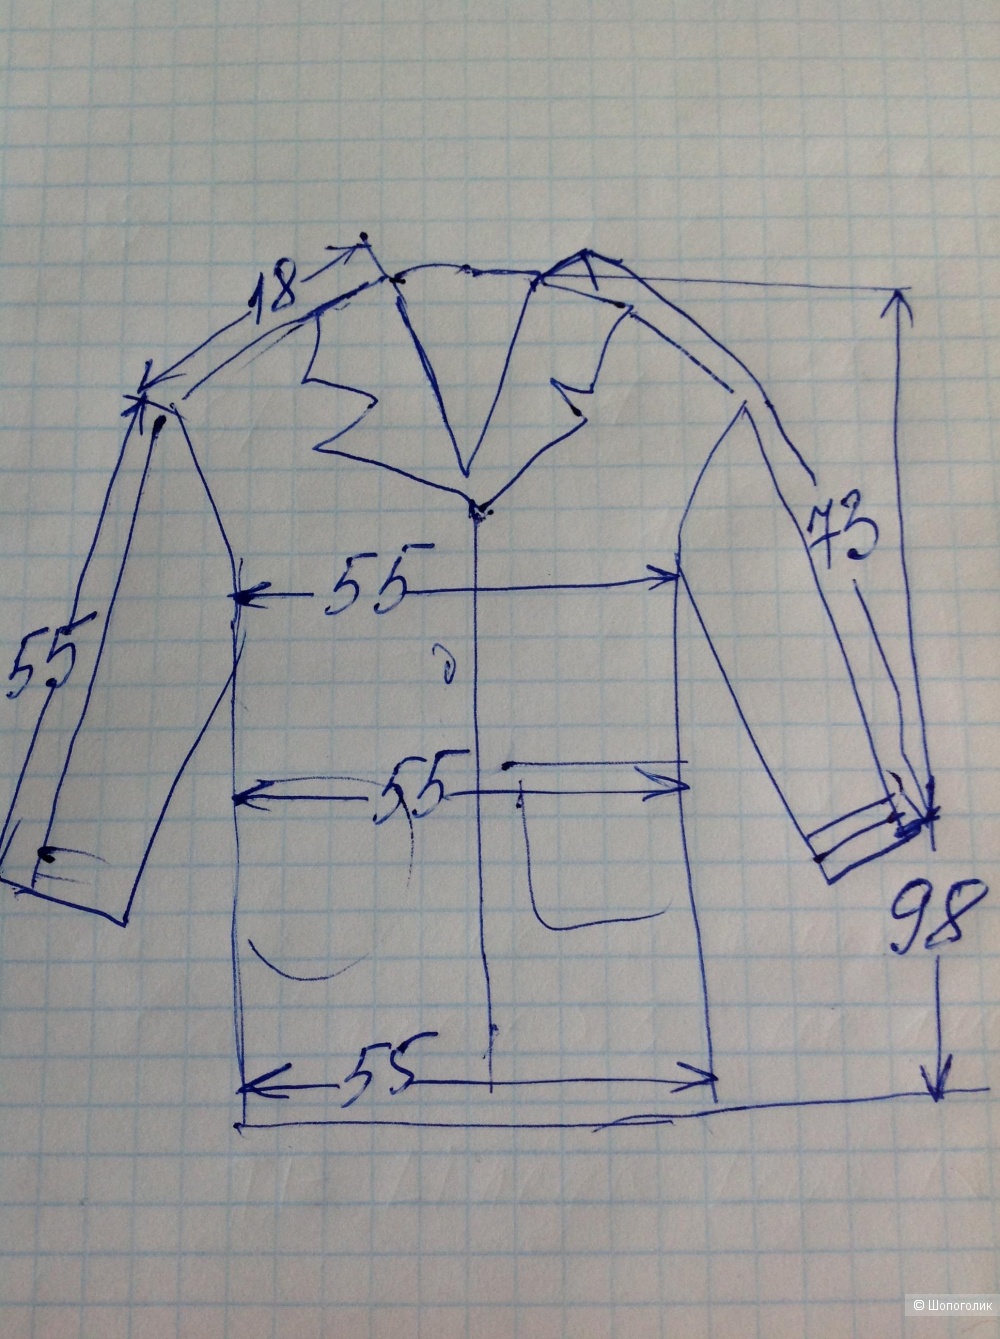 Шерстяное пальто Blagoliya, размер 48